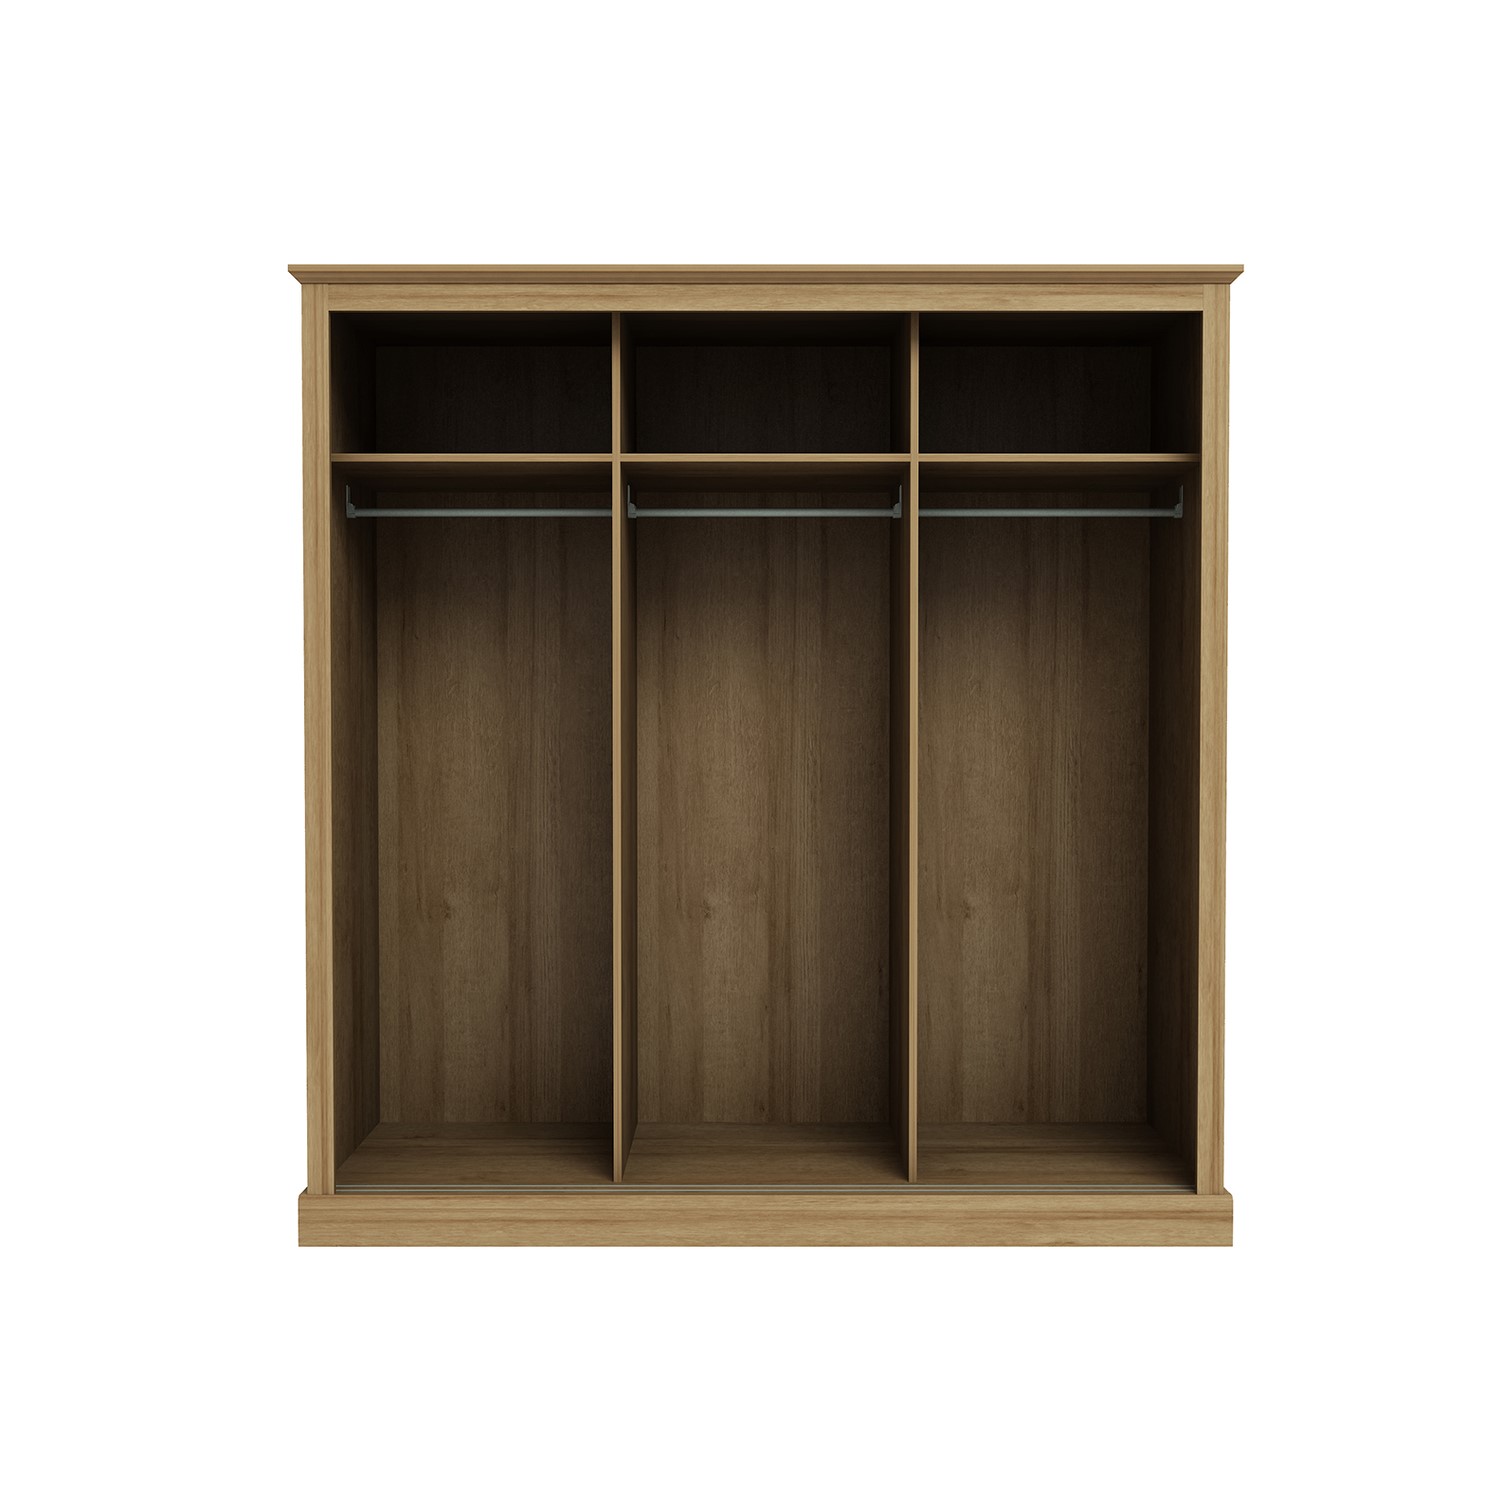 Read more about Oak 3 door sliding mirrored wardrobe devon lpd